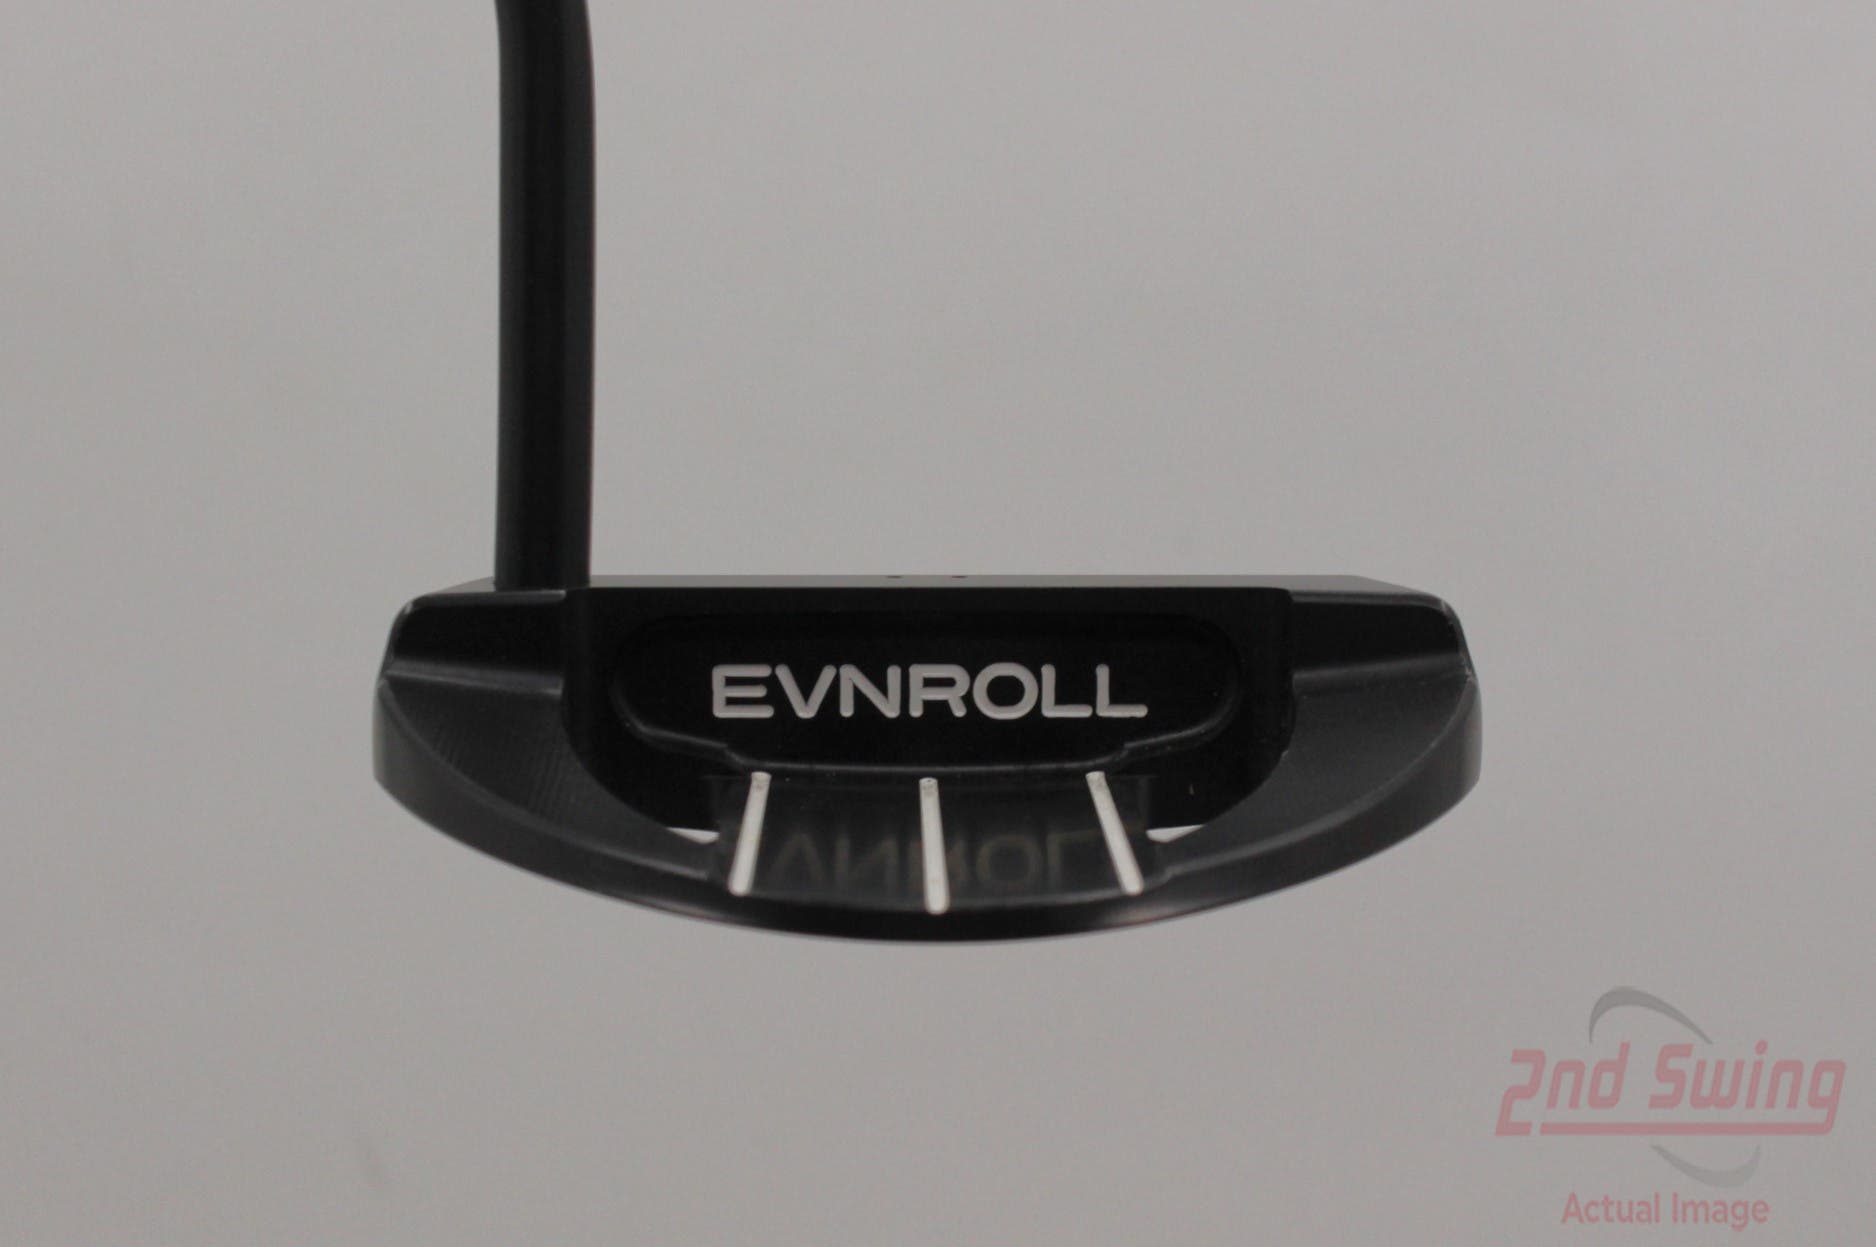 Evnroll ER7B Full Mallet Putter (T-62224443517) | 2nd Swing Golf